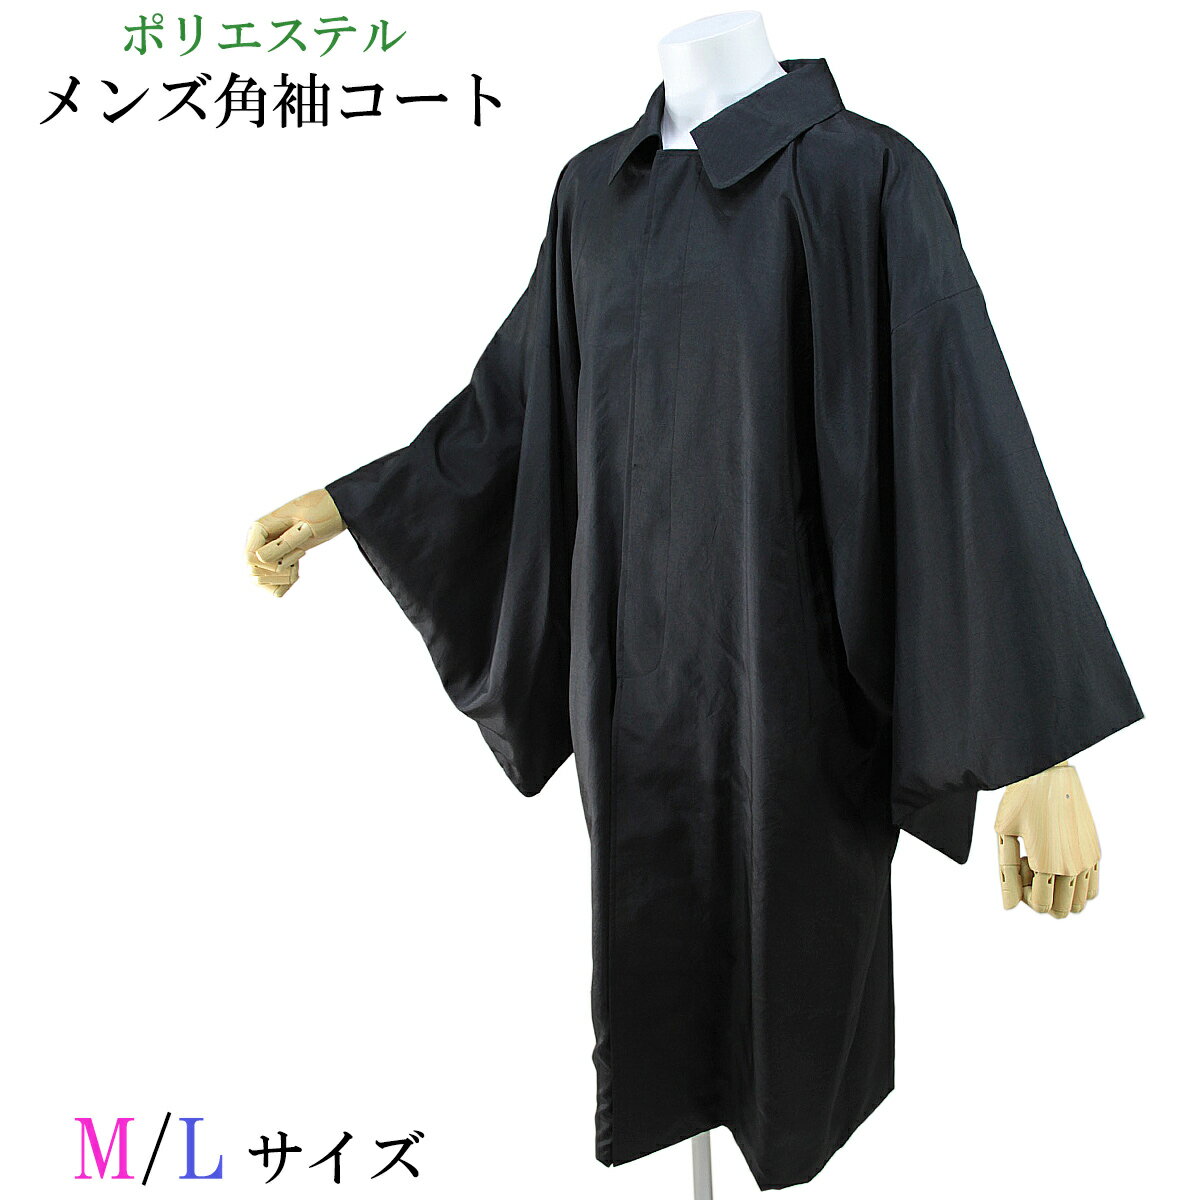 角袖コート メンズ和装コート ポリエステル100% ブラック M/L-size